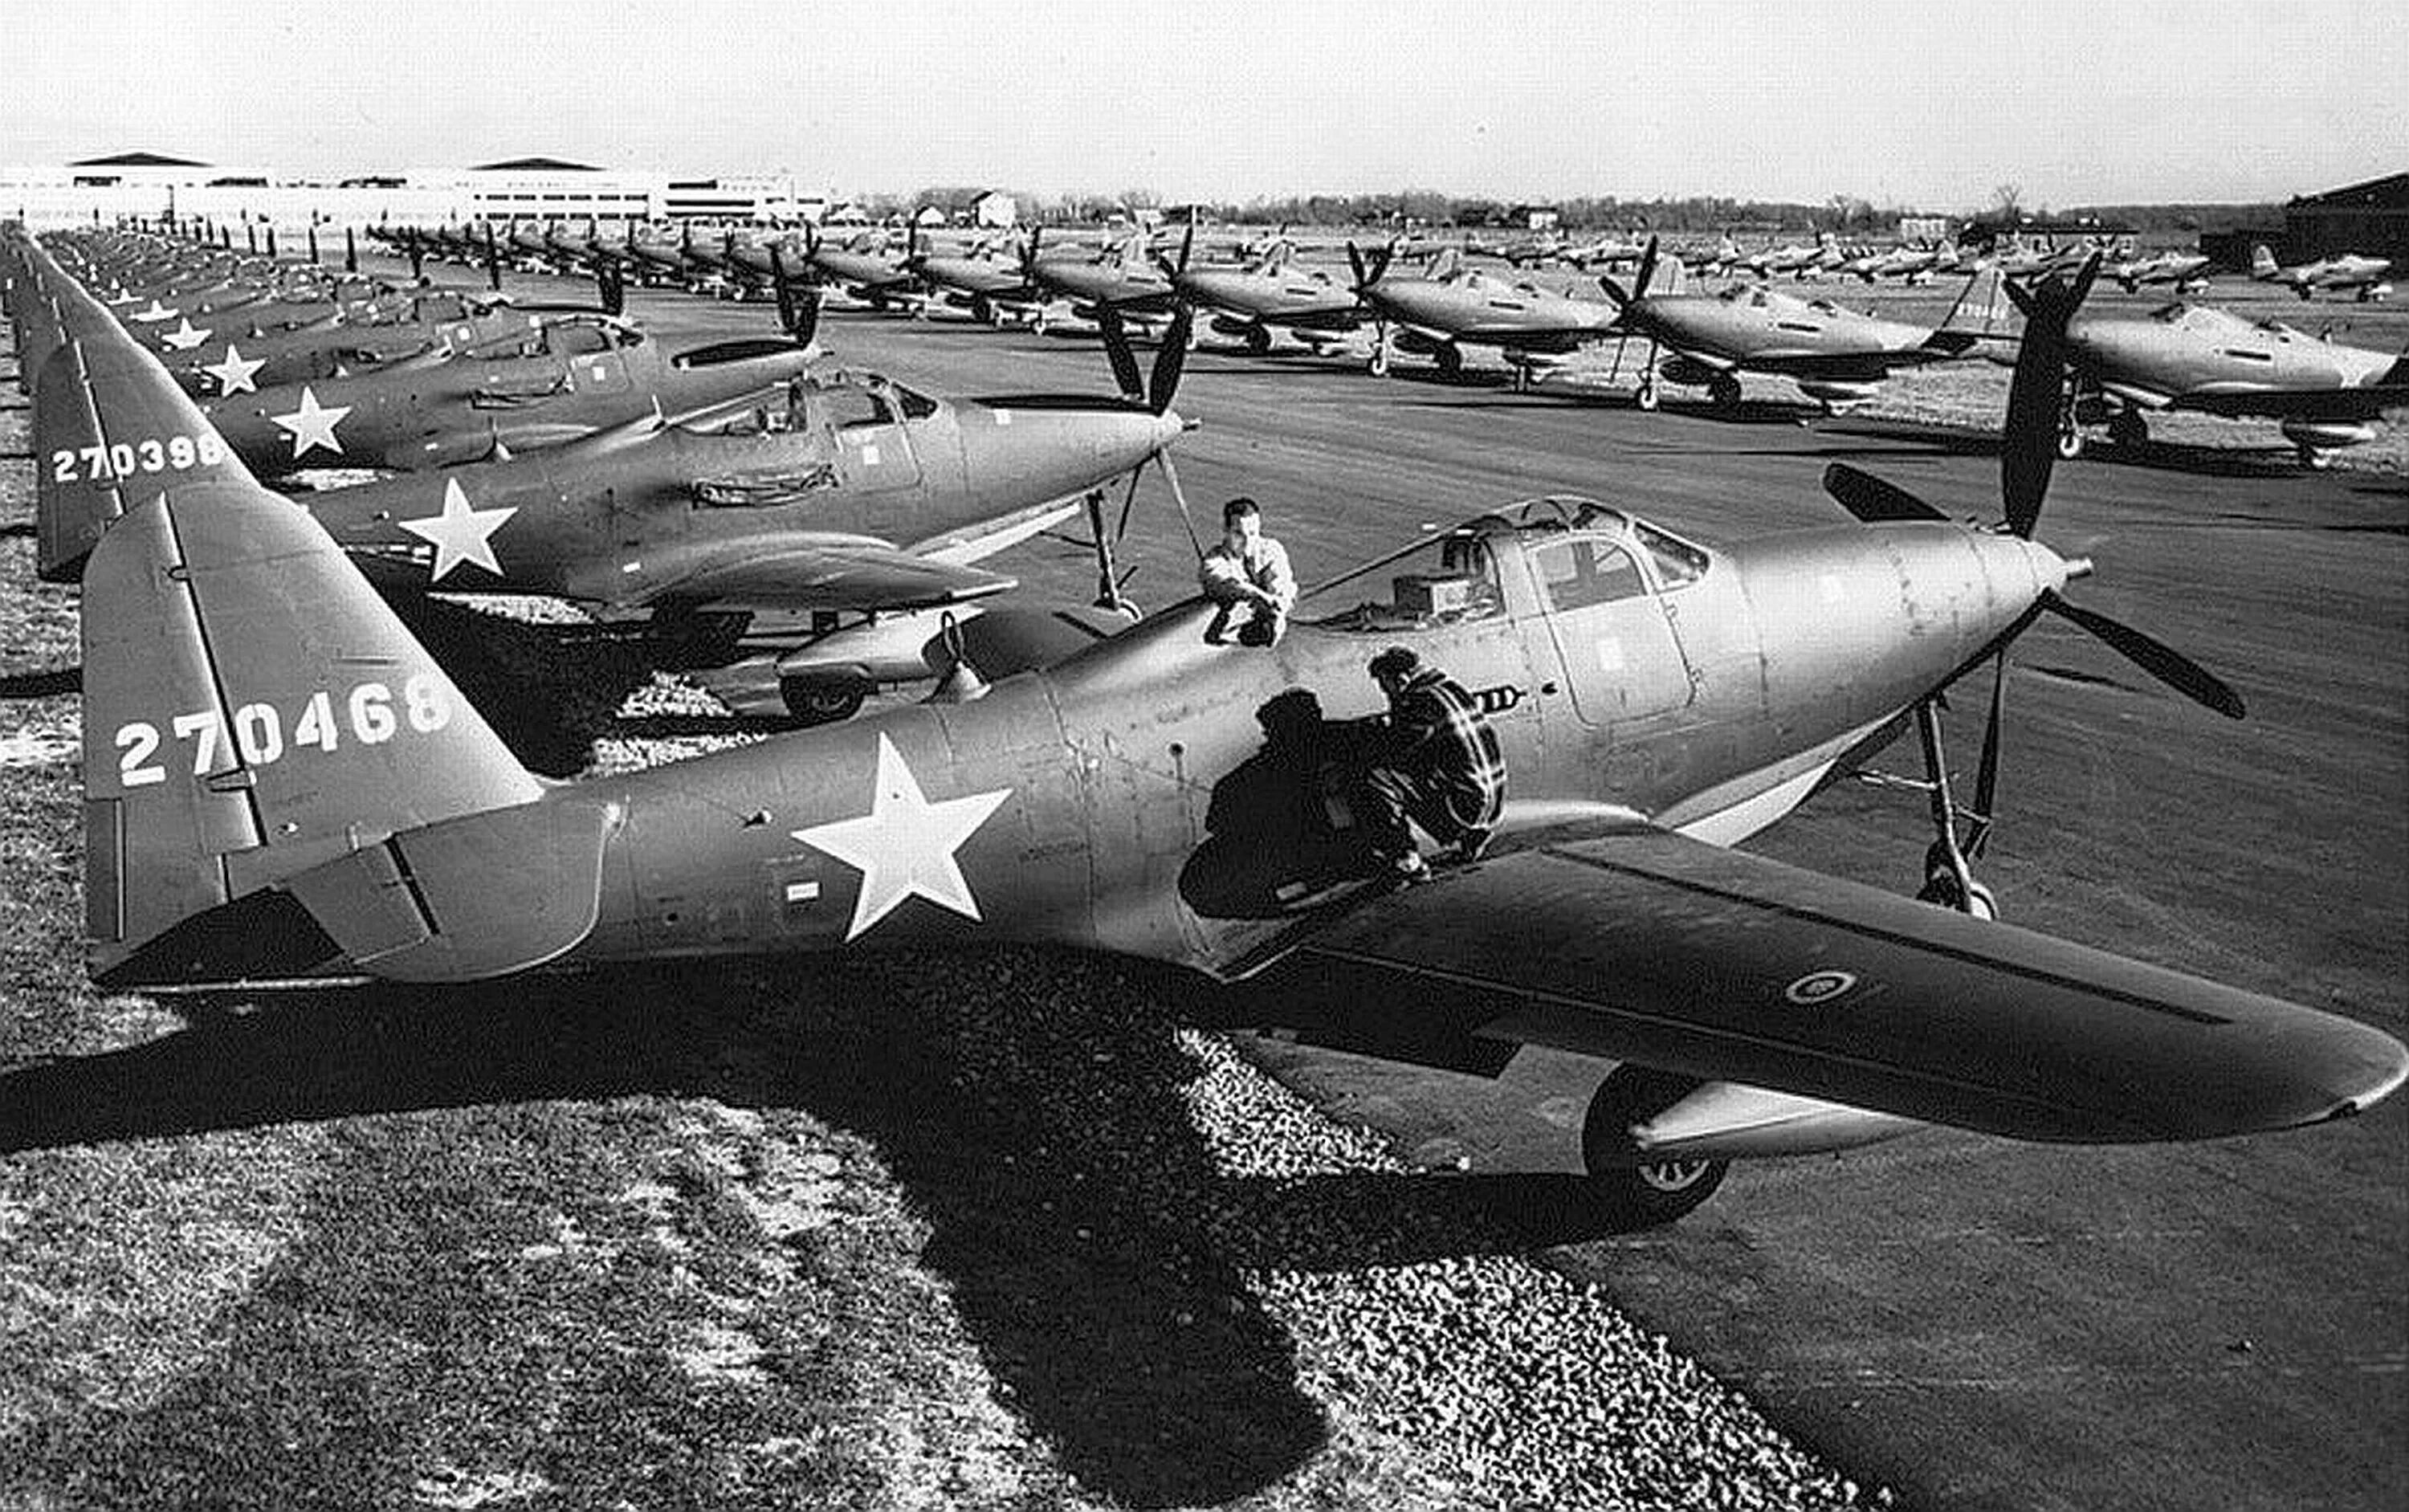 P 63 4. Bell p-63 Kingcobra. Белл p-63 "Кингкобра". P-63 Kingcobra в СССР. Р-63 Кингкобра ленд Лиз самолет в СССР.